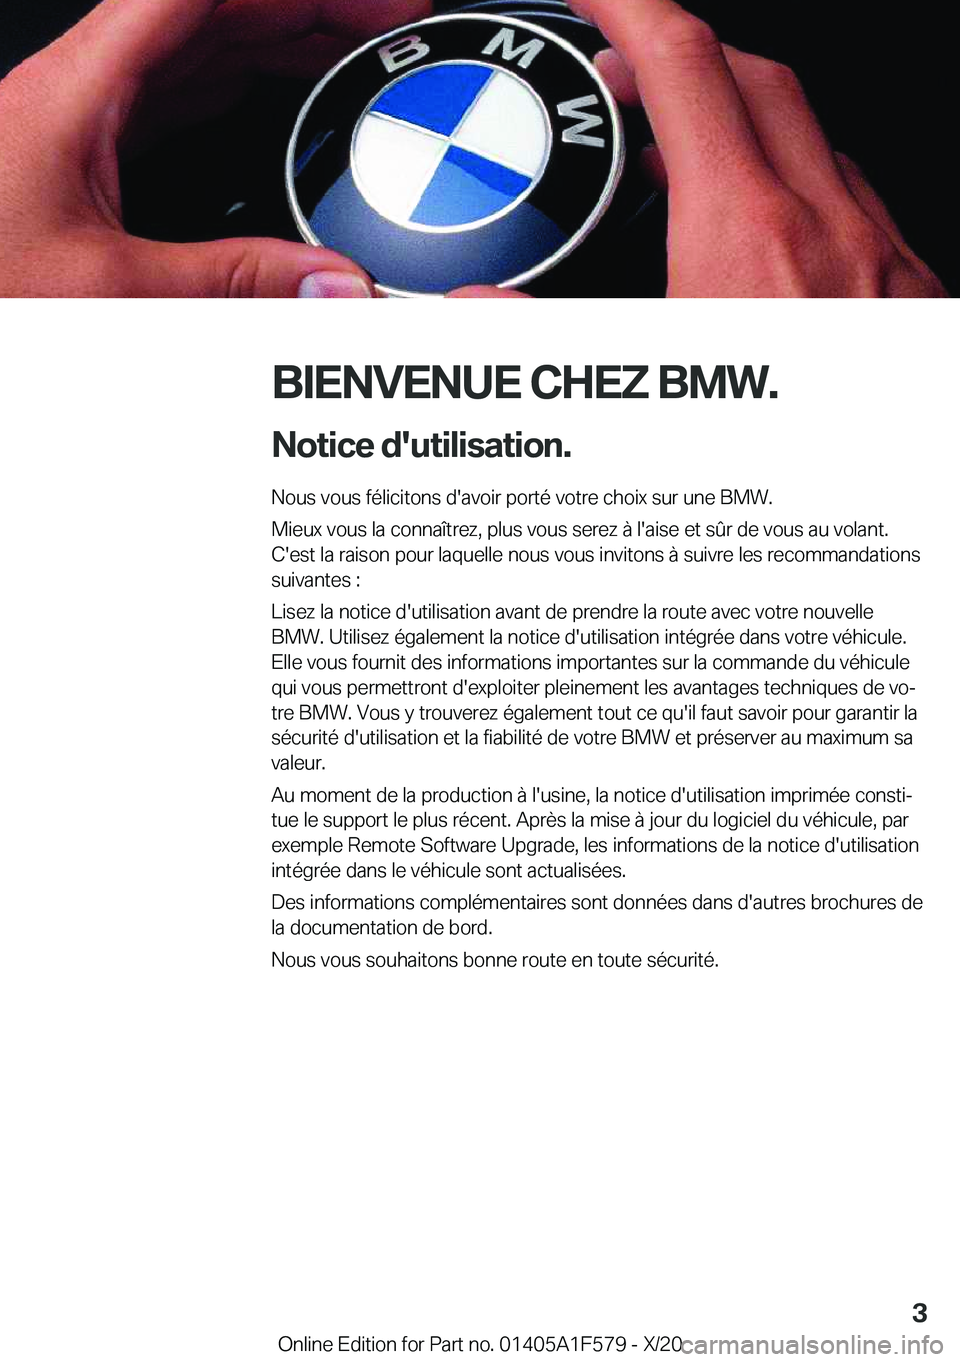 BMW X3 M 2021  Notices Demploi (in French) �B�I�E�N�V�E�N�U�E��C�H�E�Z��B�M�W�.�N�o�t�i�c�e��d�'�u�t�i�l�i�s�a�t�i�o�n�.
�N�o�u�s��v�o�u�s��f�é�l�i�c�i�t�o�n�s��d�'�a�v�o�i�r��p�o�r�t�é��v�o�t�r�e��c�h�o�i�x��s�u�r��u�n�e�